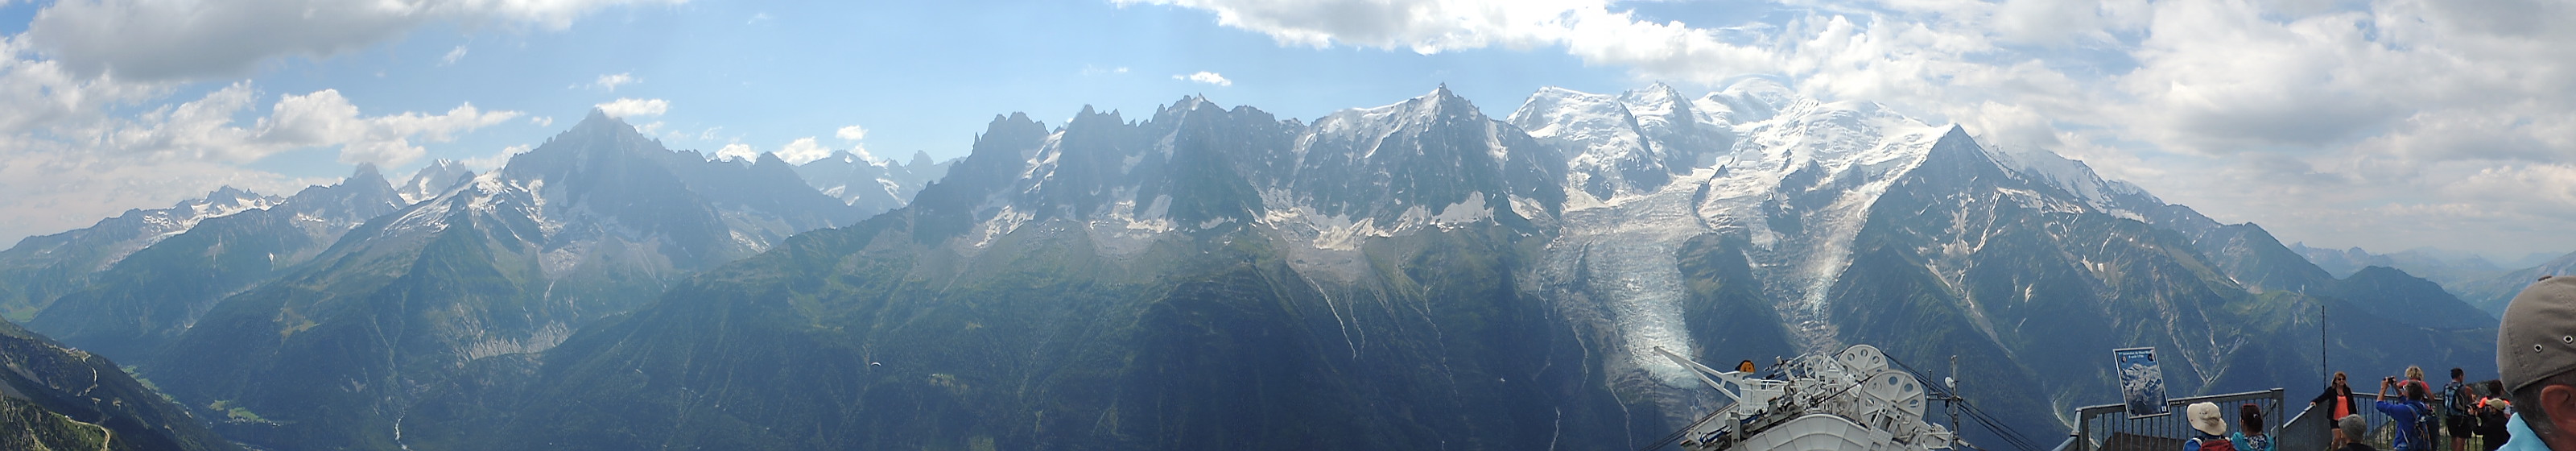 Mont Blanc, The Alps - DSCN3968